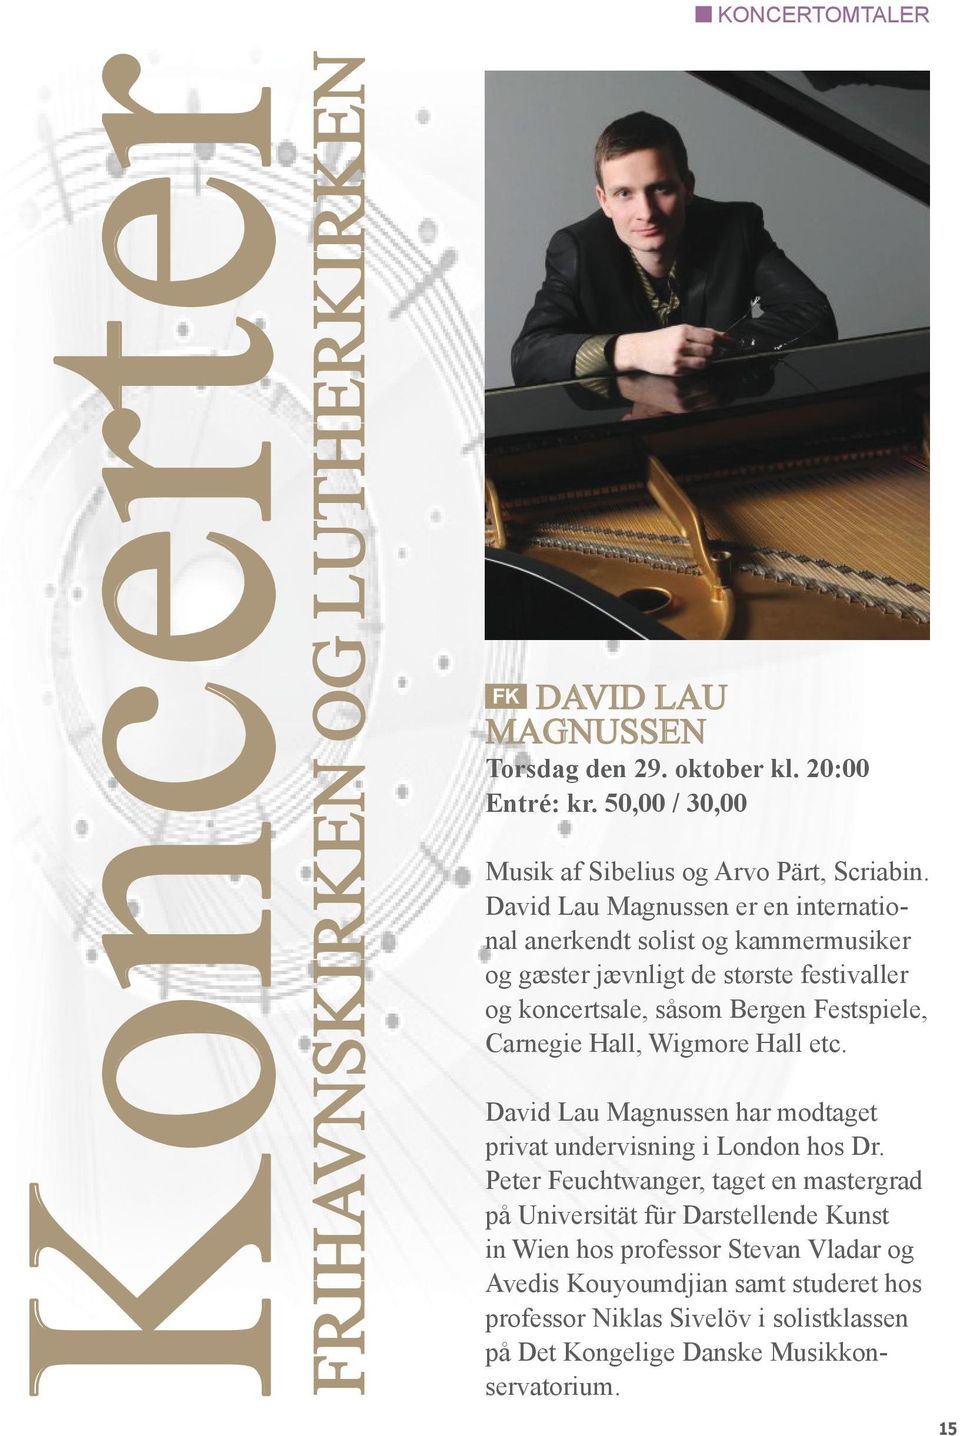 David Lau Magnussen er en international anerkendt solist og kammermusiker og gæster jævnligt de største festivaller og koncertsale, såsom Bergen Festspiele, Carnegie